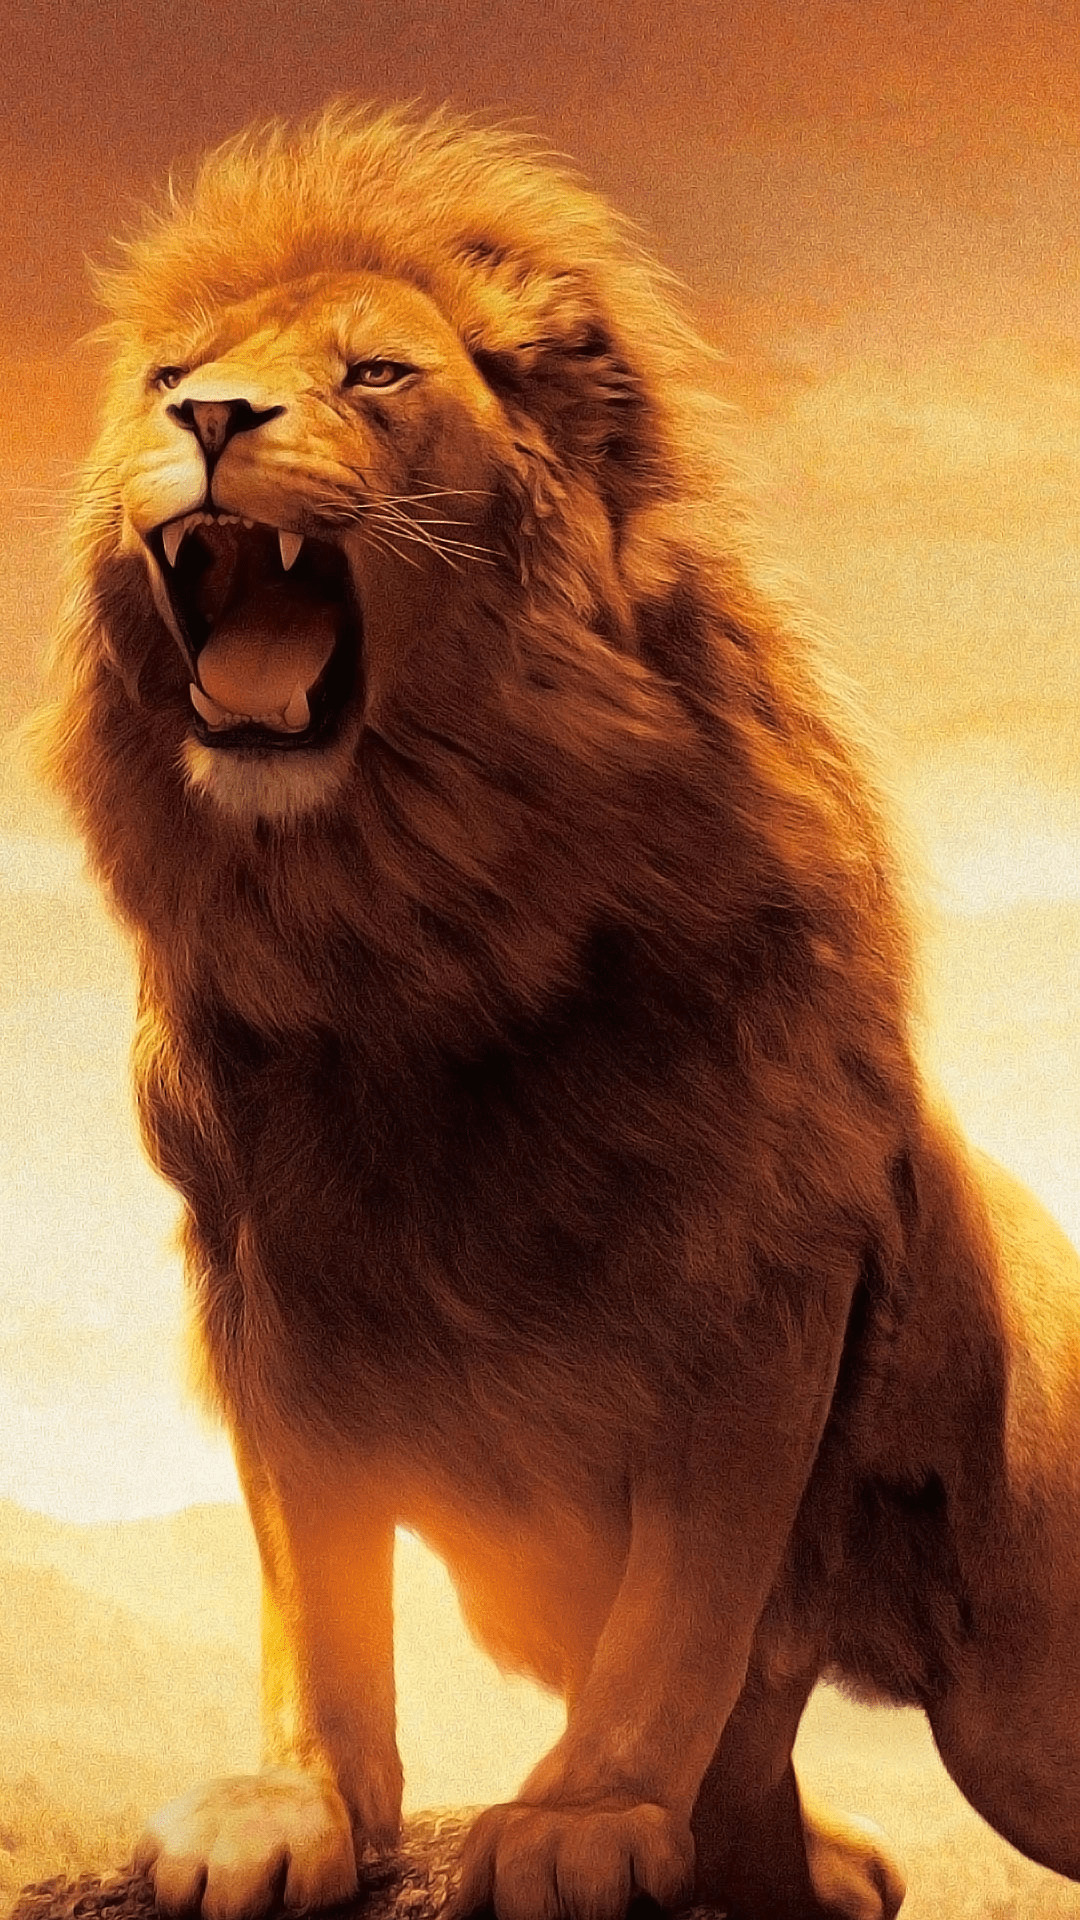 Hình nền sư tử là lựa chọn hoàn hảo cho những người yêu thích mạnh mẽ và đầy quyền lực. Với hình ảnh sư tử to lớn và đầy thách thức, bạn sẽ cảm thấy tràn đầy năng lượng và sự quyết tâm khi nhìn vào màn hình của mình.